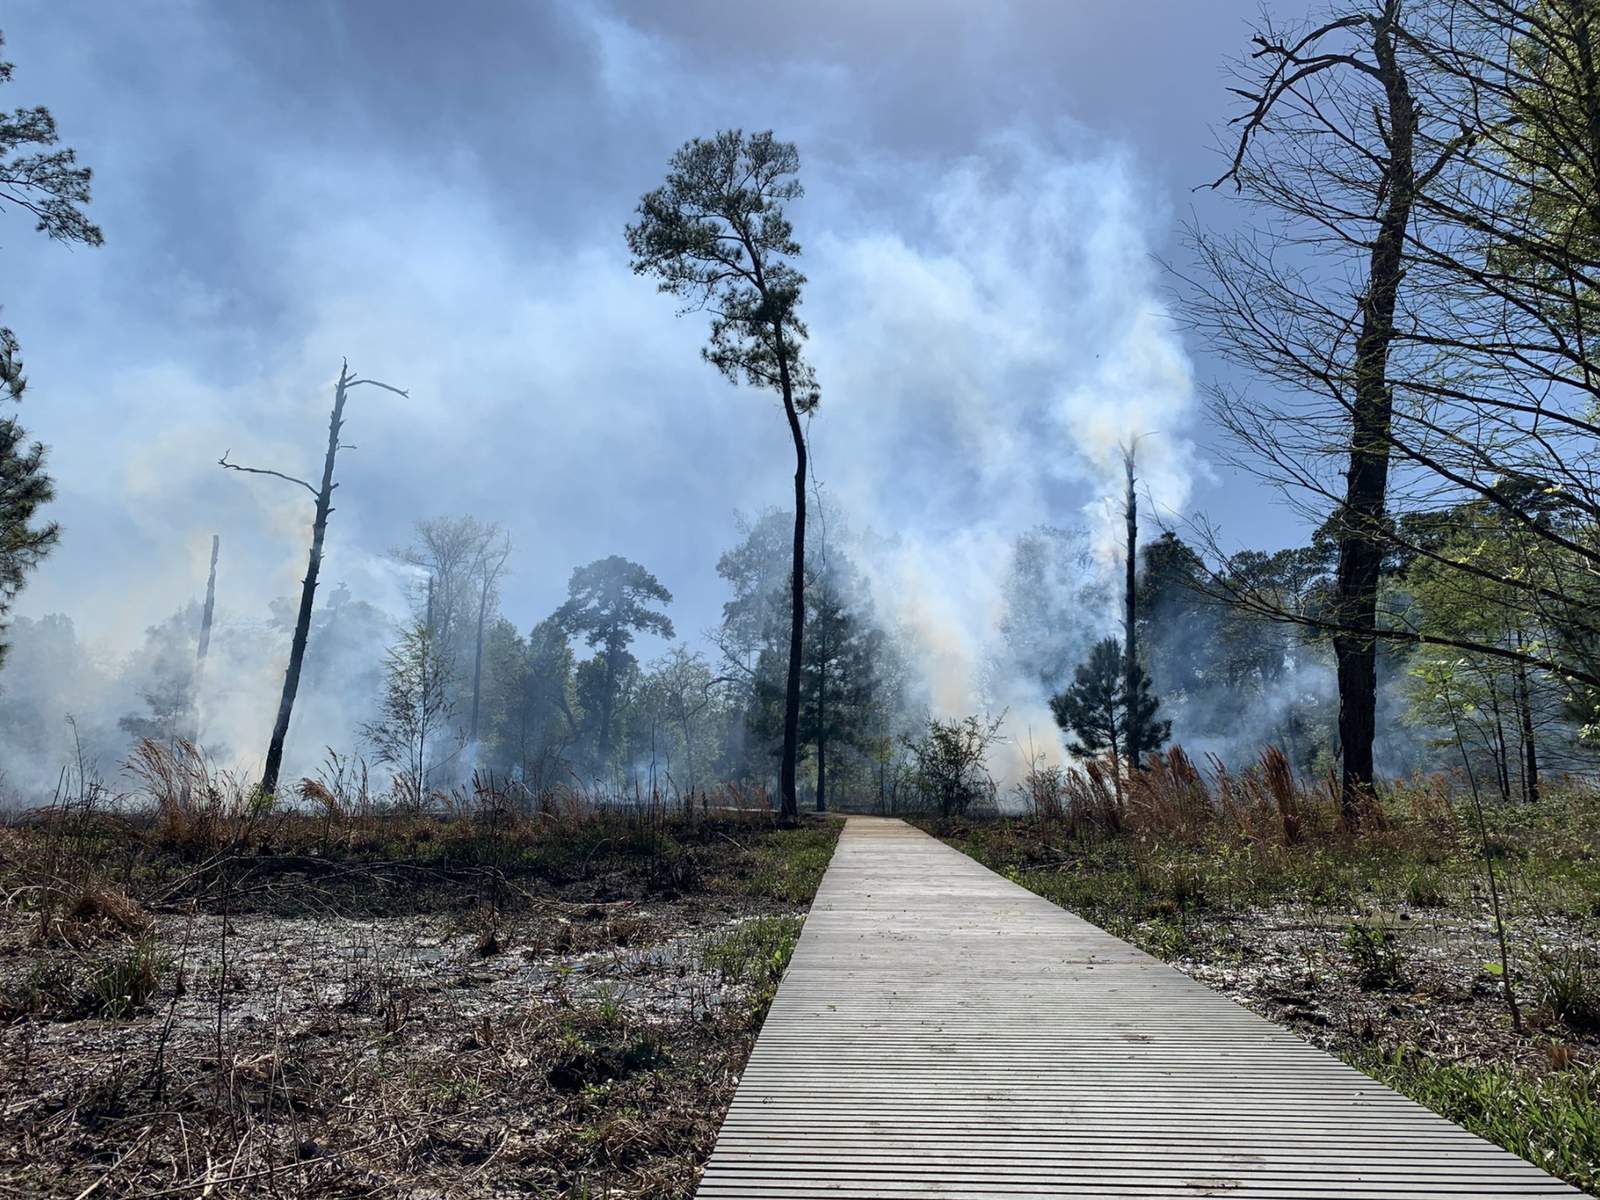 Houston Arboretum & Nature Center completes prescribed burn at Arboretum